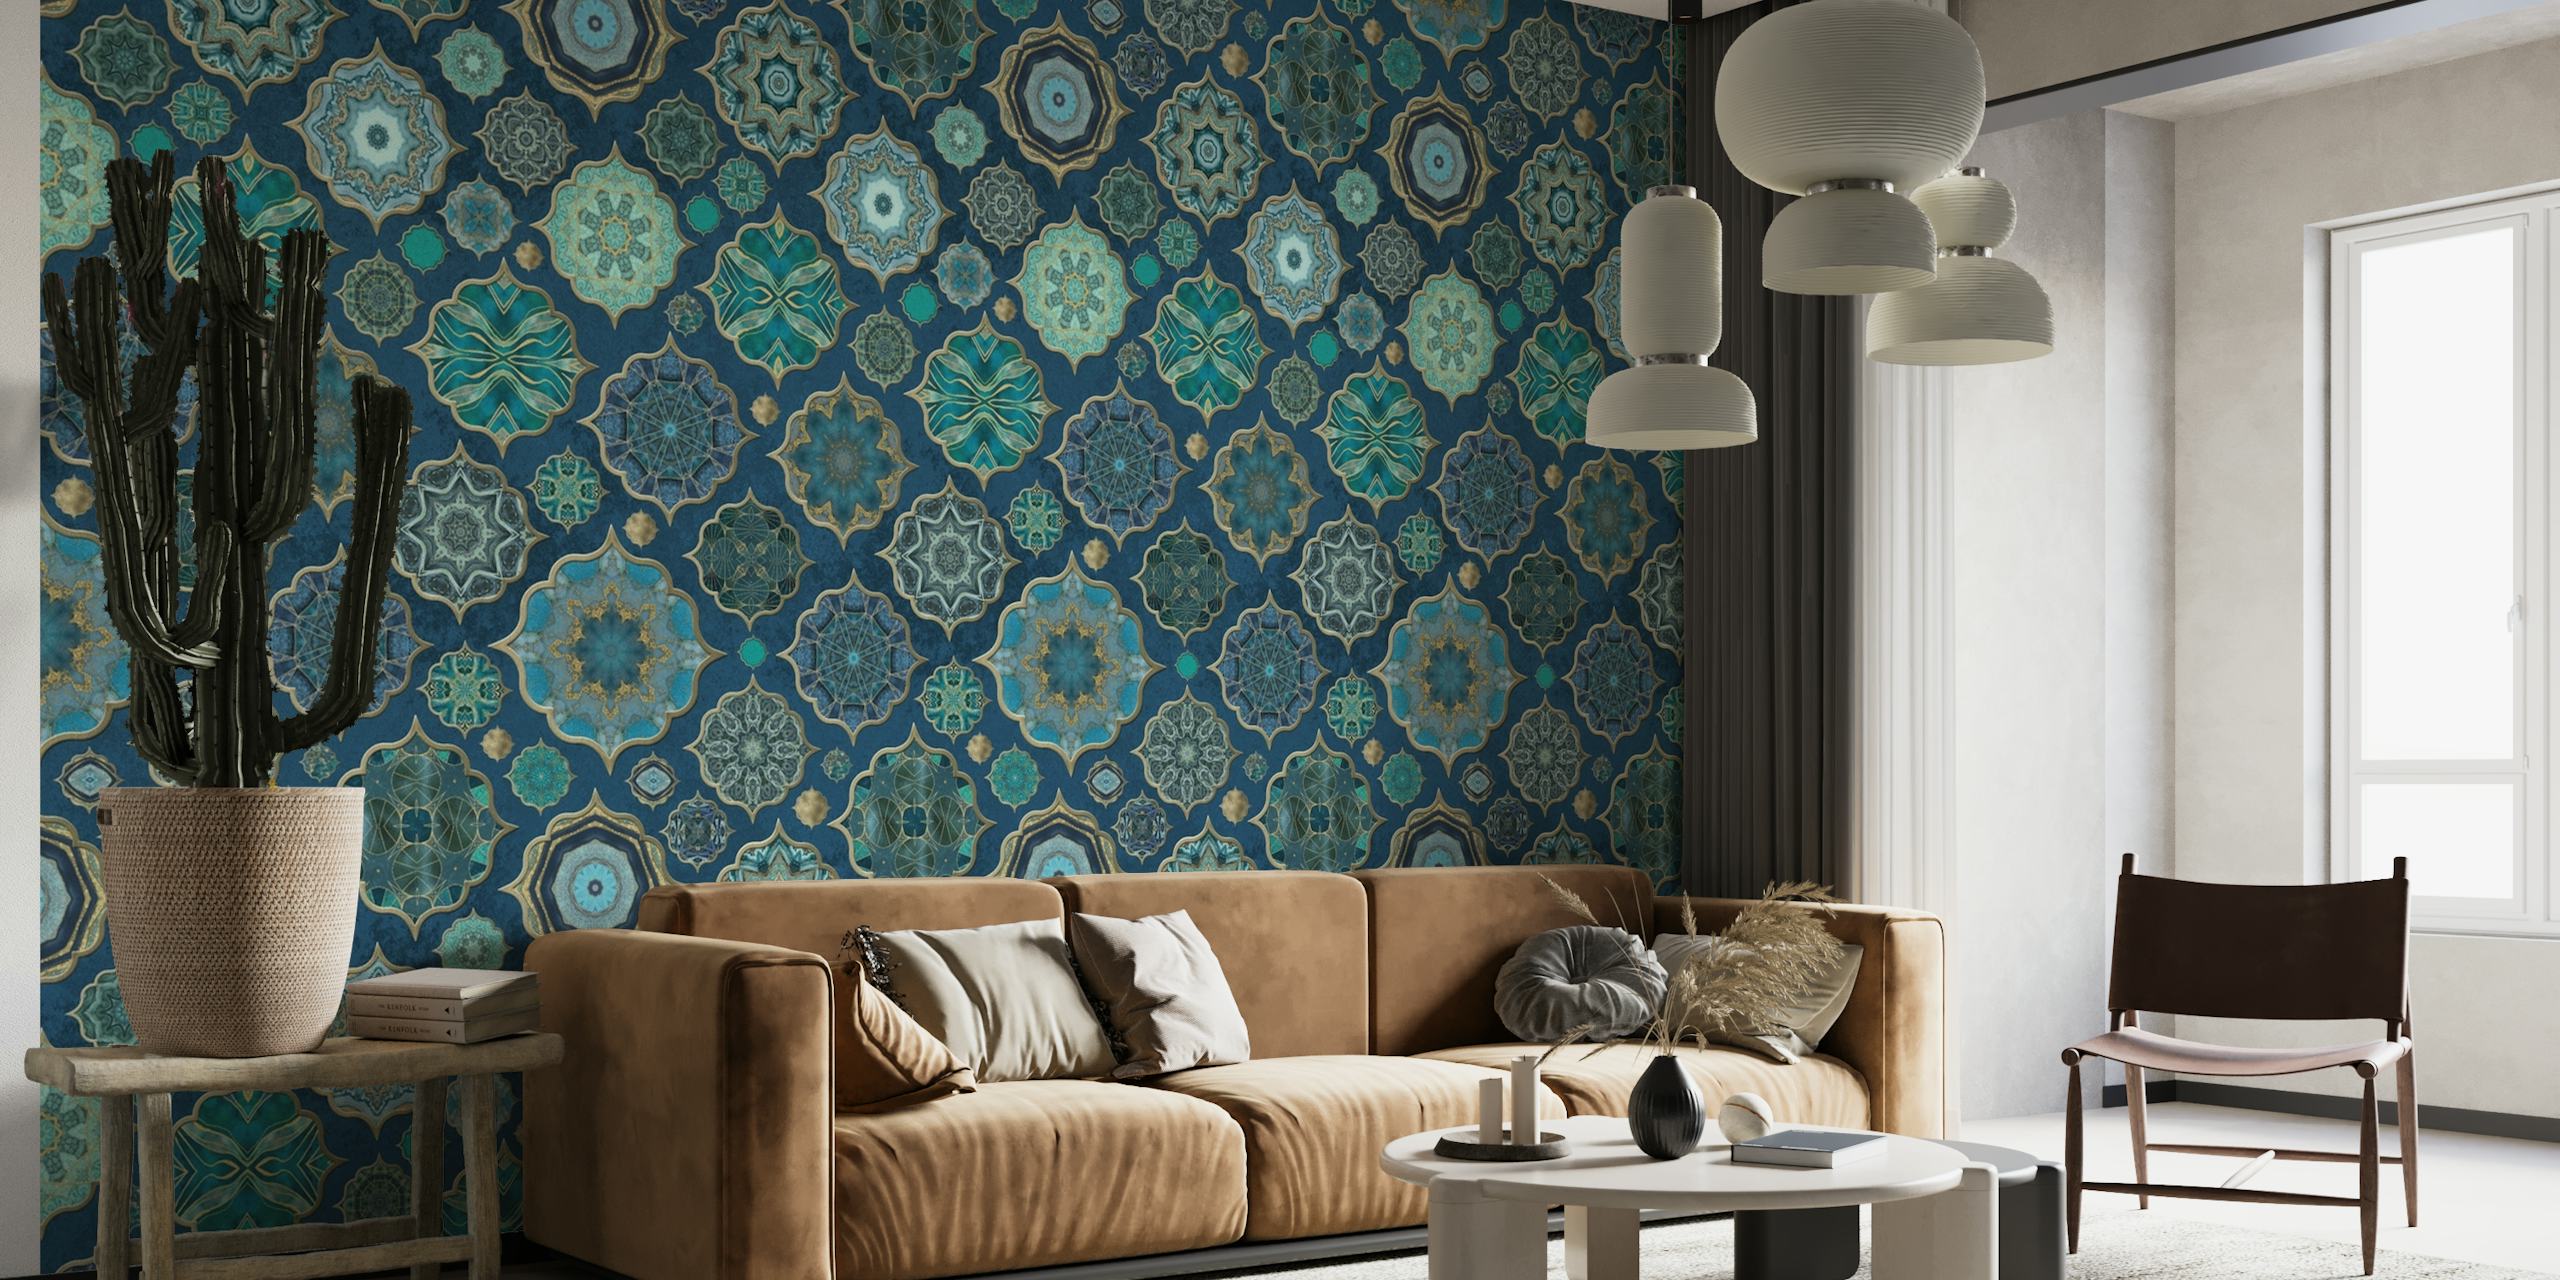 Moroccan Tiles Teal Luxury papel pintado